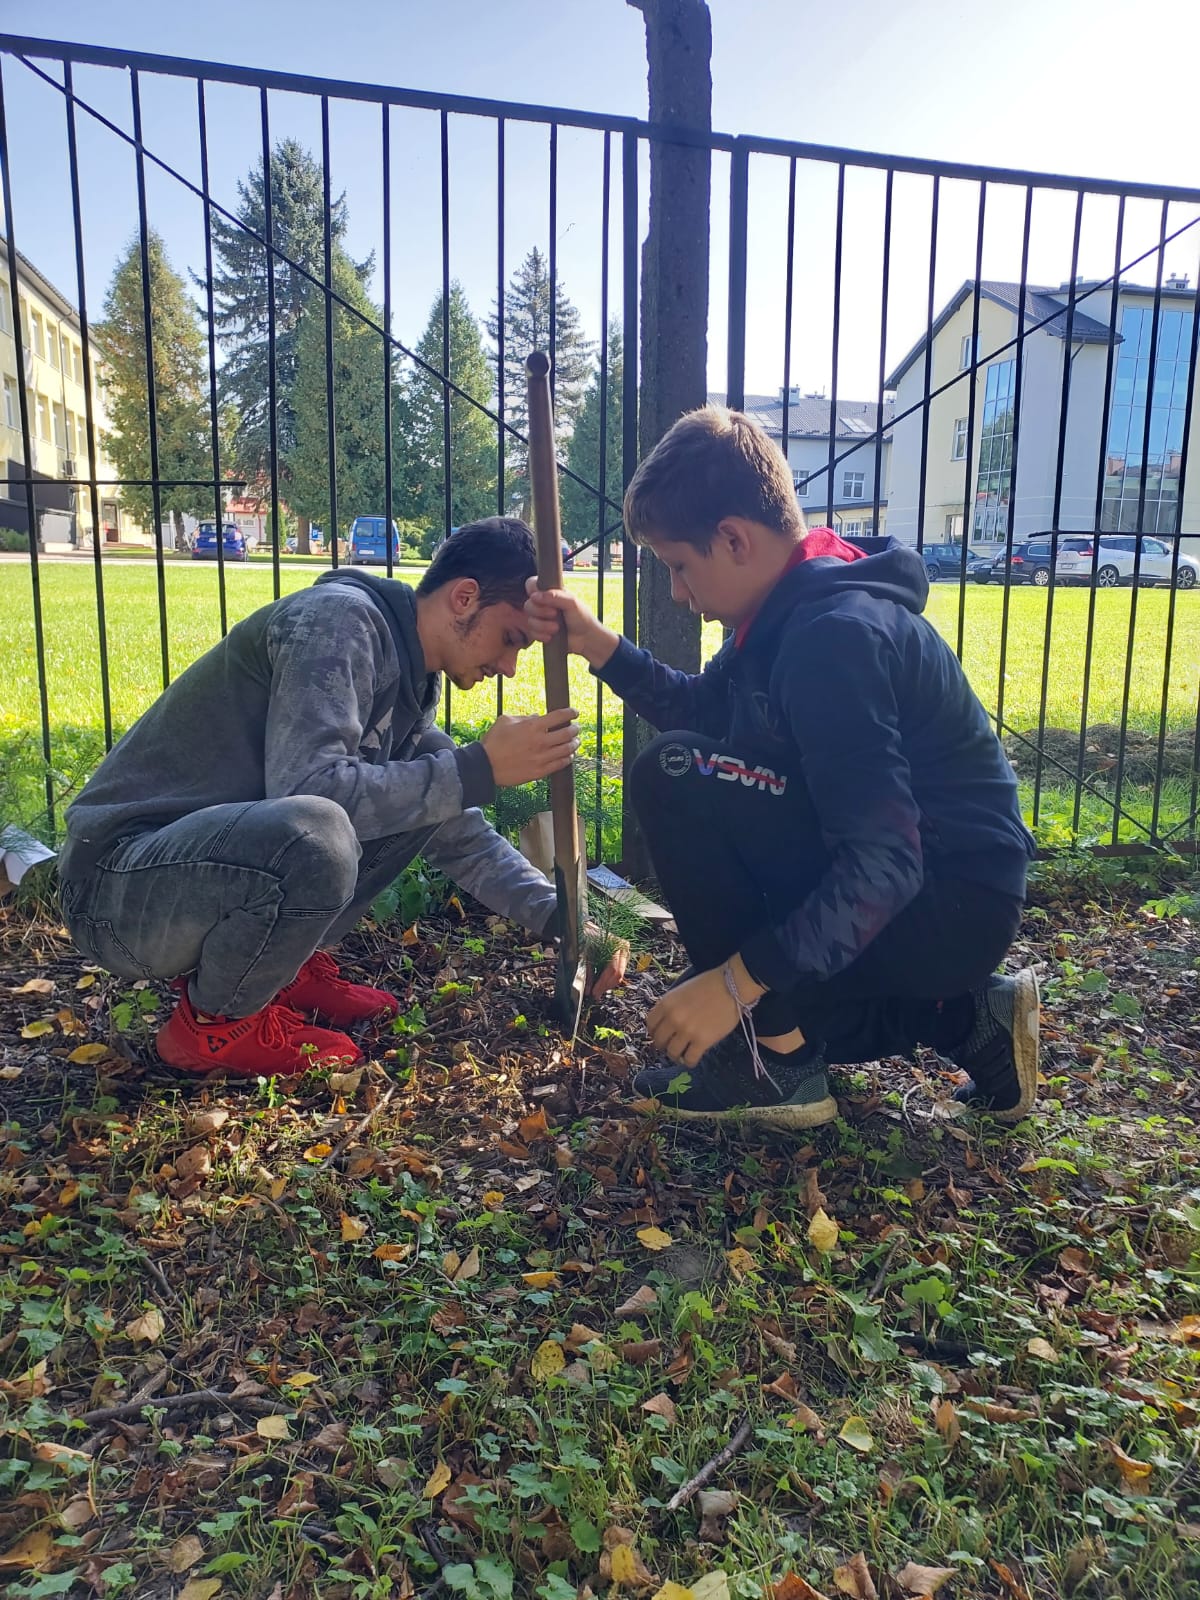 Sadzimy z Prezydentem RP | Dwóch wychowanków MOW sadzi otrzymaną sadzonkę na placu Ośrodka. Za nimi ogrodzenie z metalowych prętów, w tle drzewa i budynki..jpg